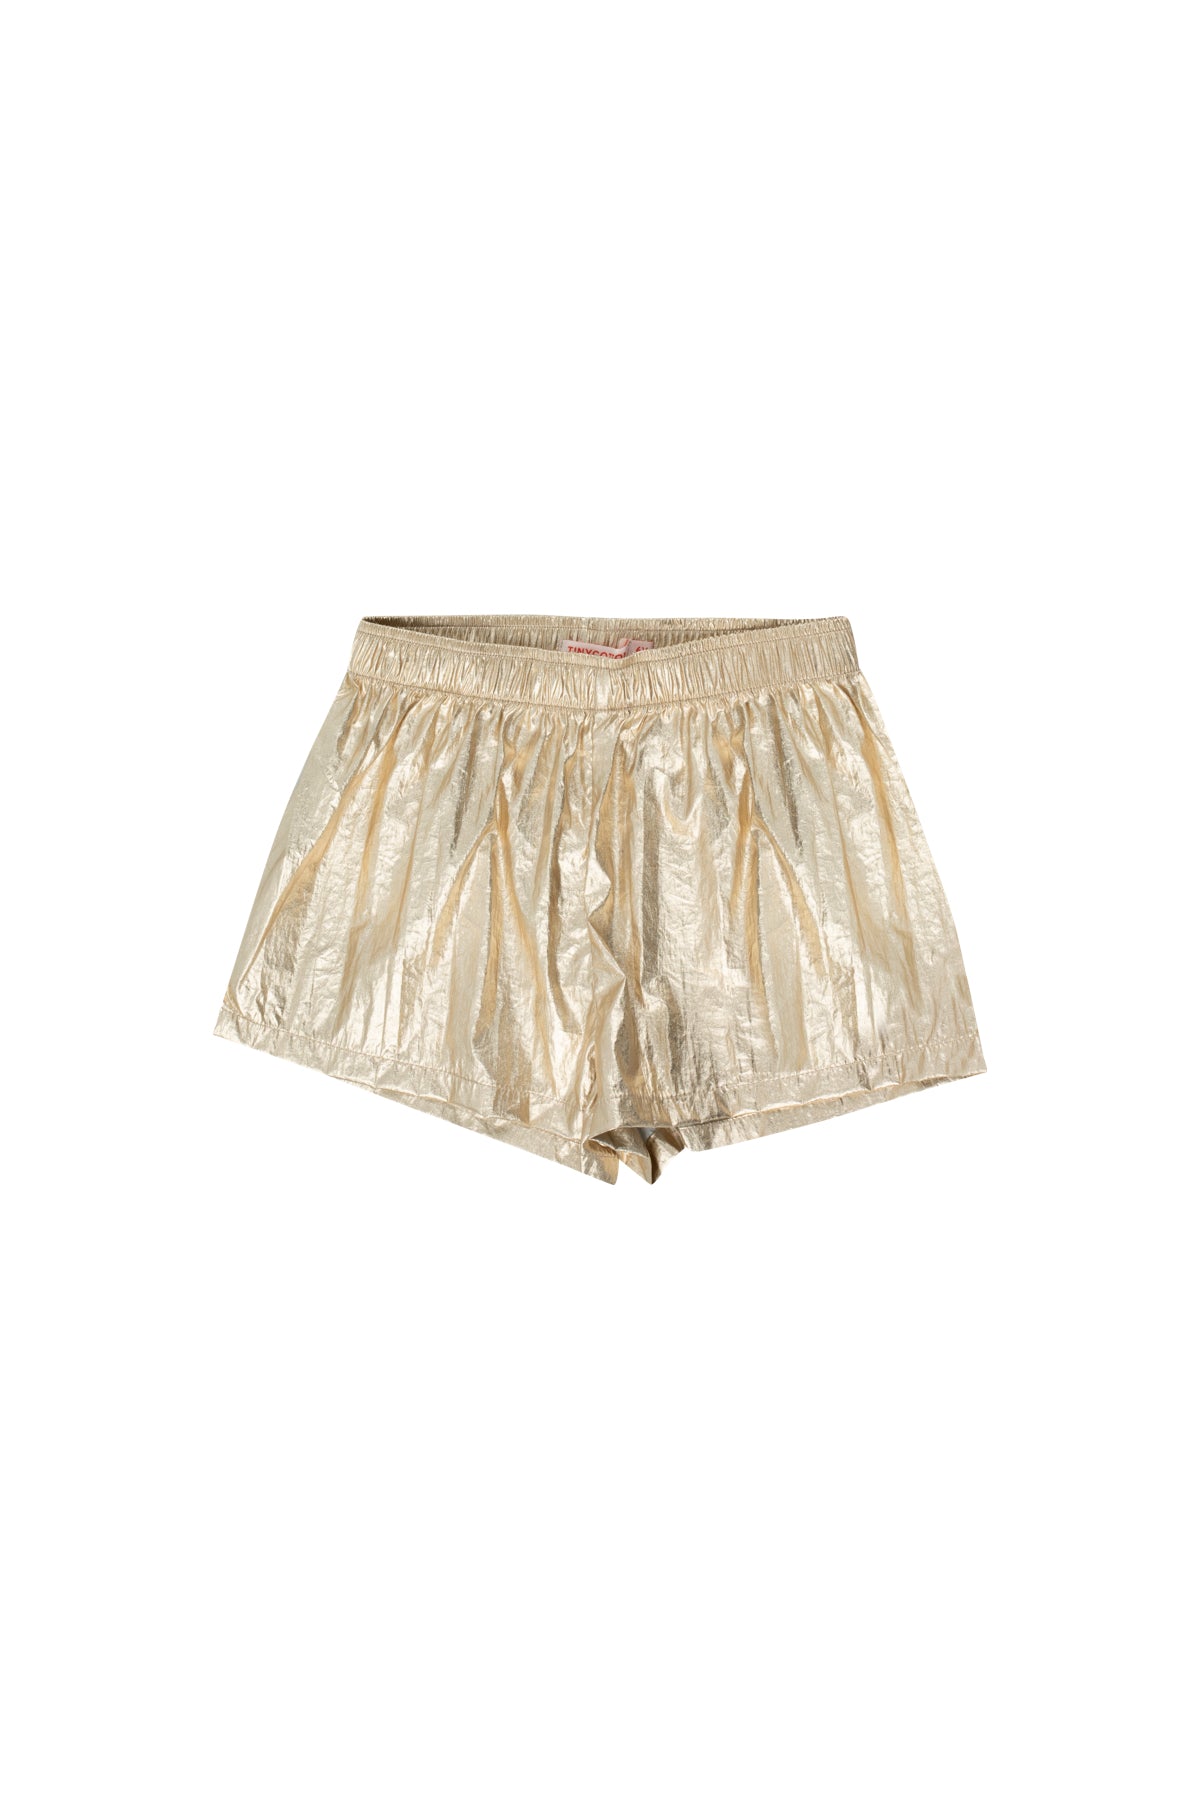 Tiny Cottons - shiny shorts - gold